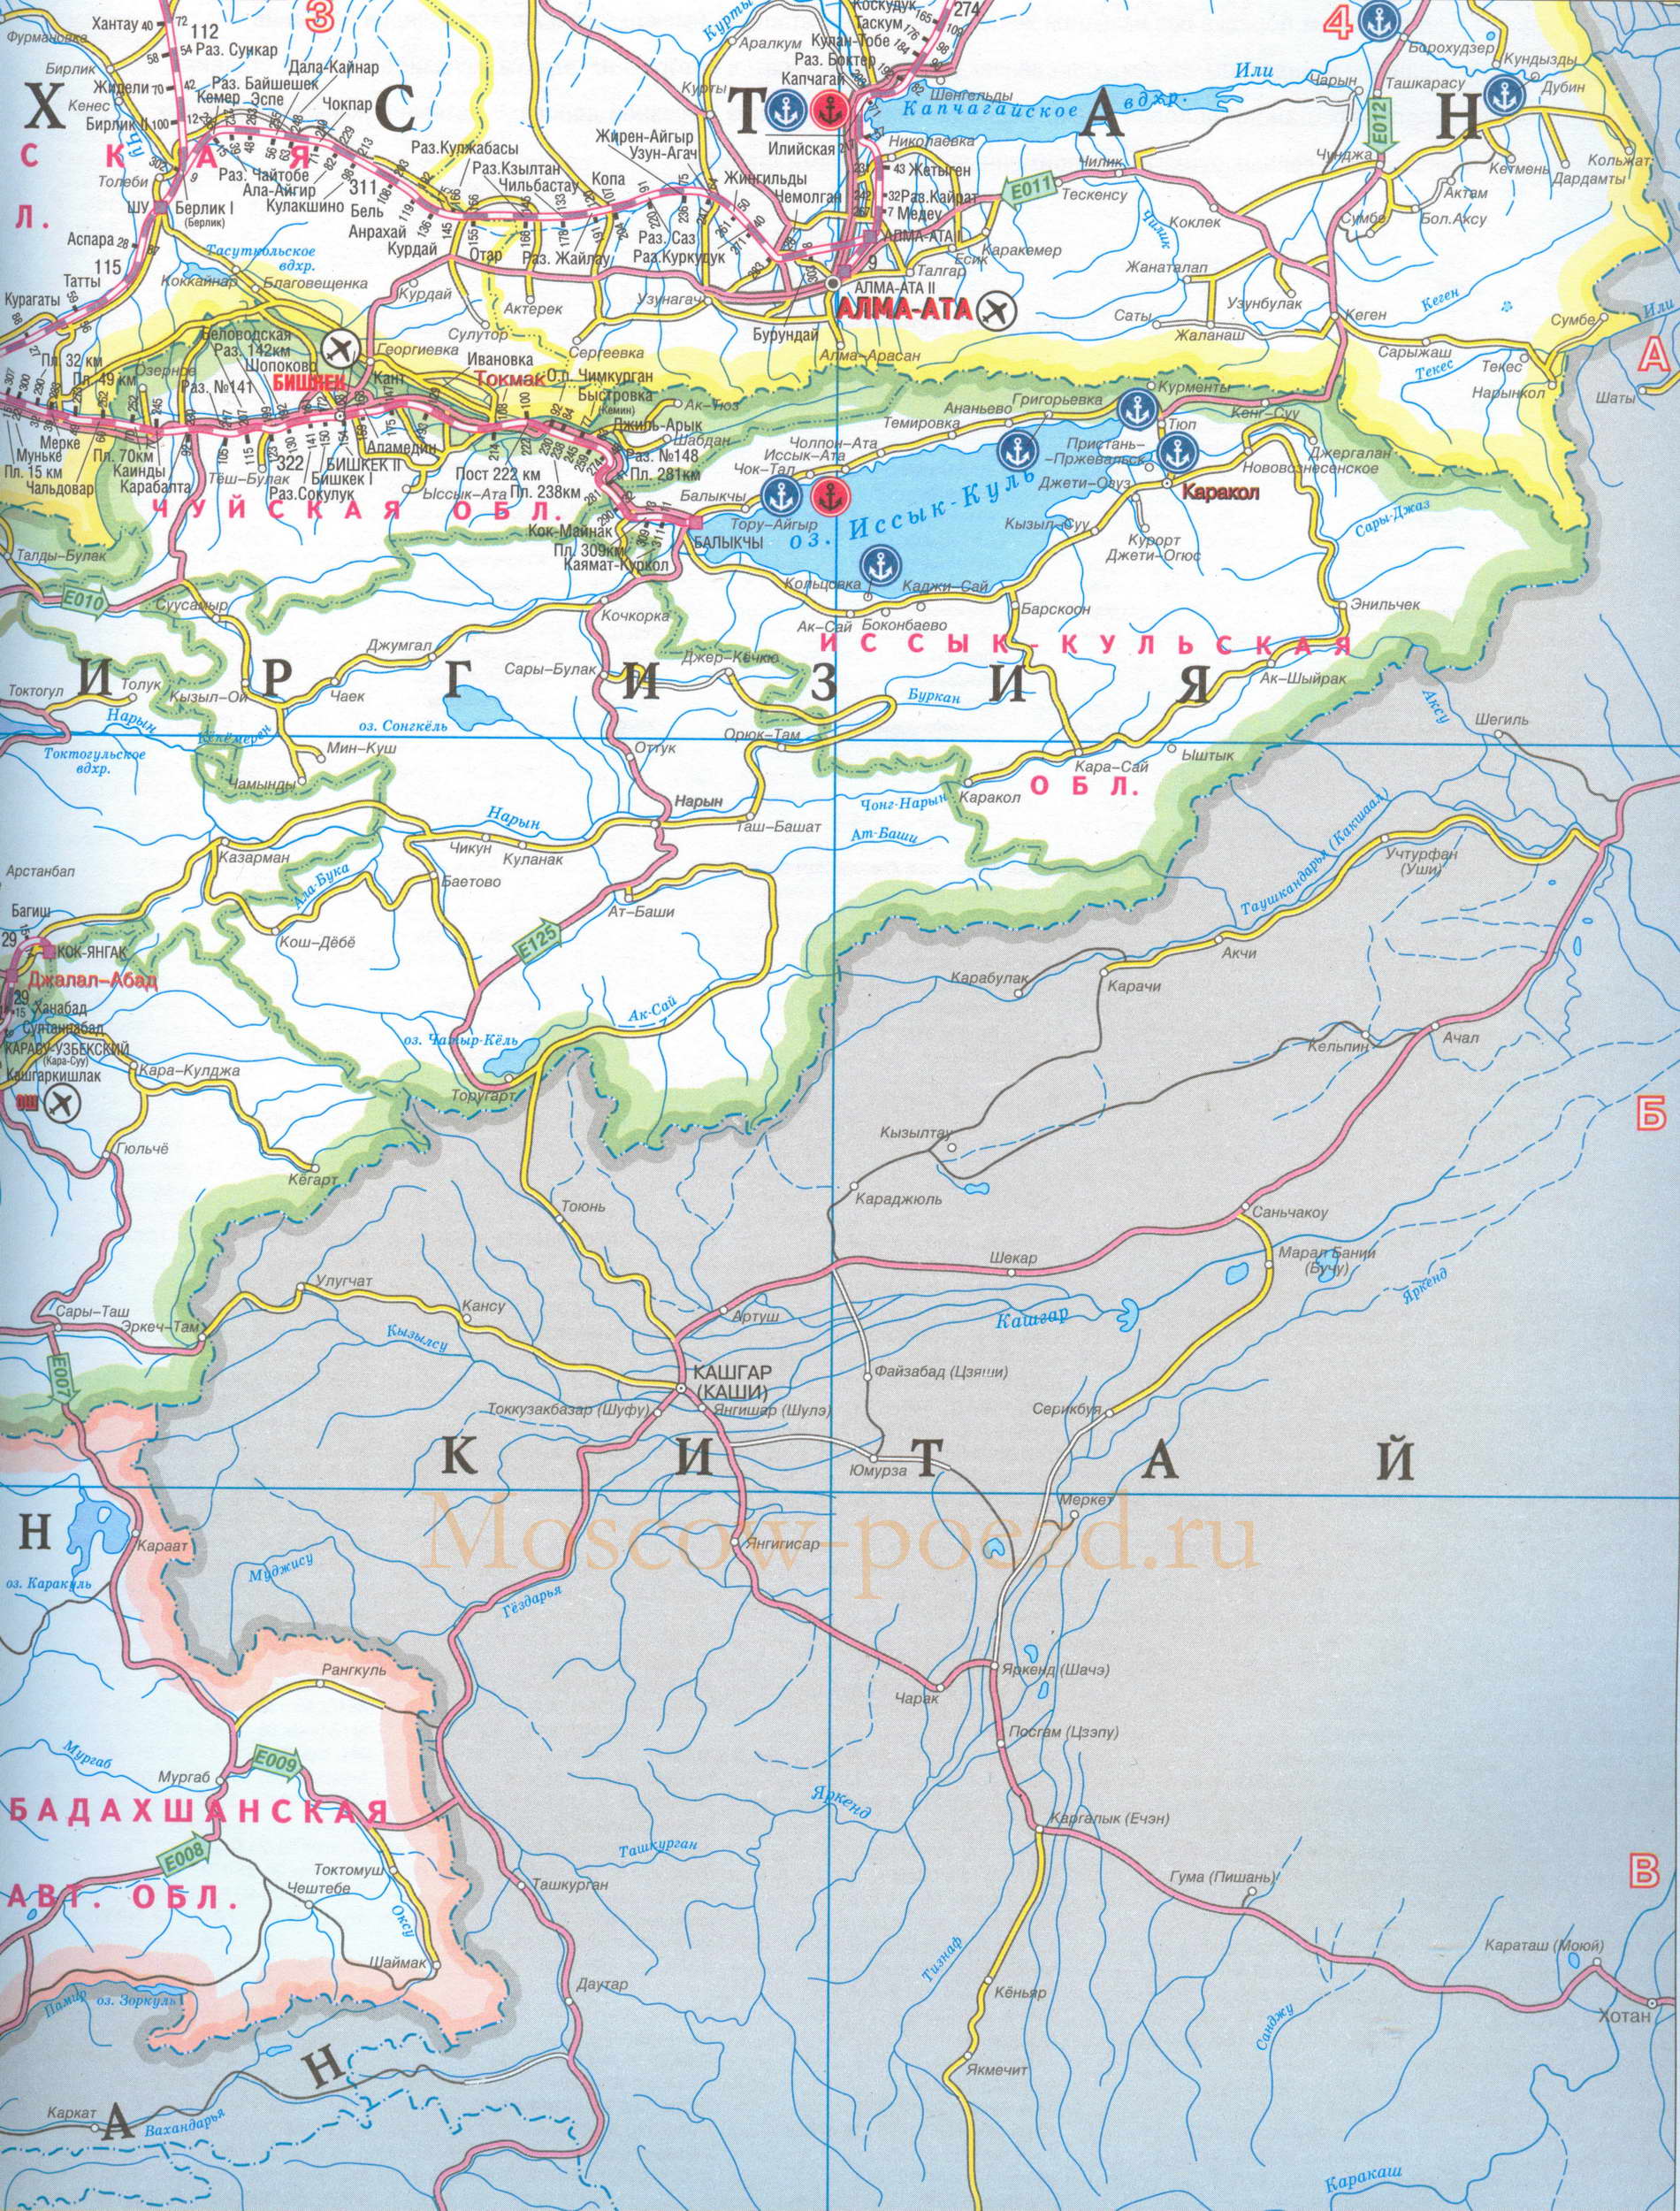 Карта Киргизии и Таджикистана. Карта желехных дорог и автодорог Киргизии и Таджикистана, B0 - 